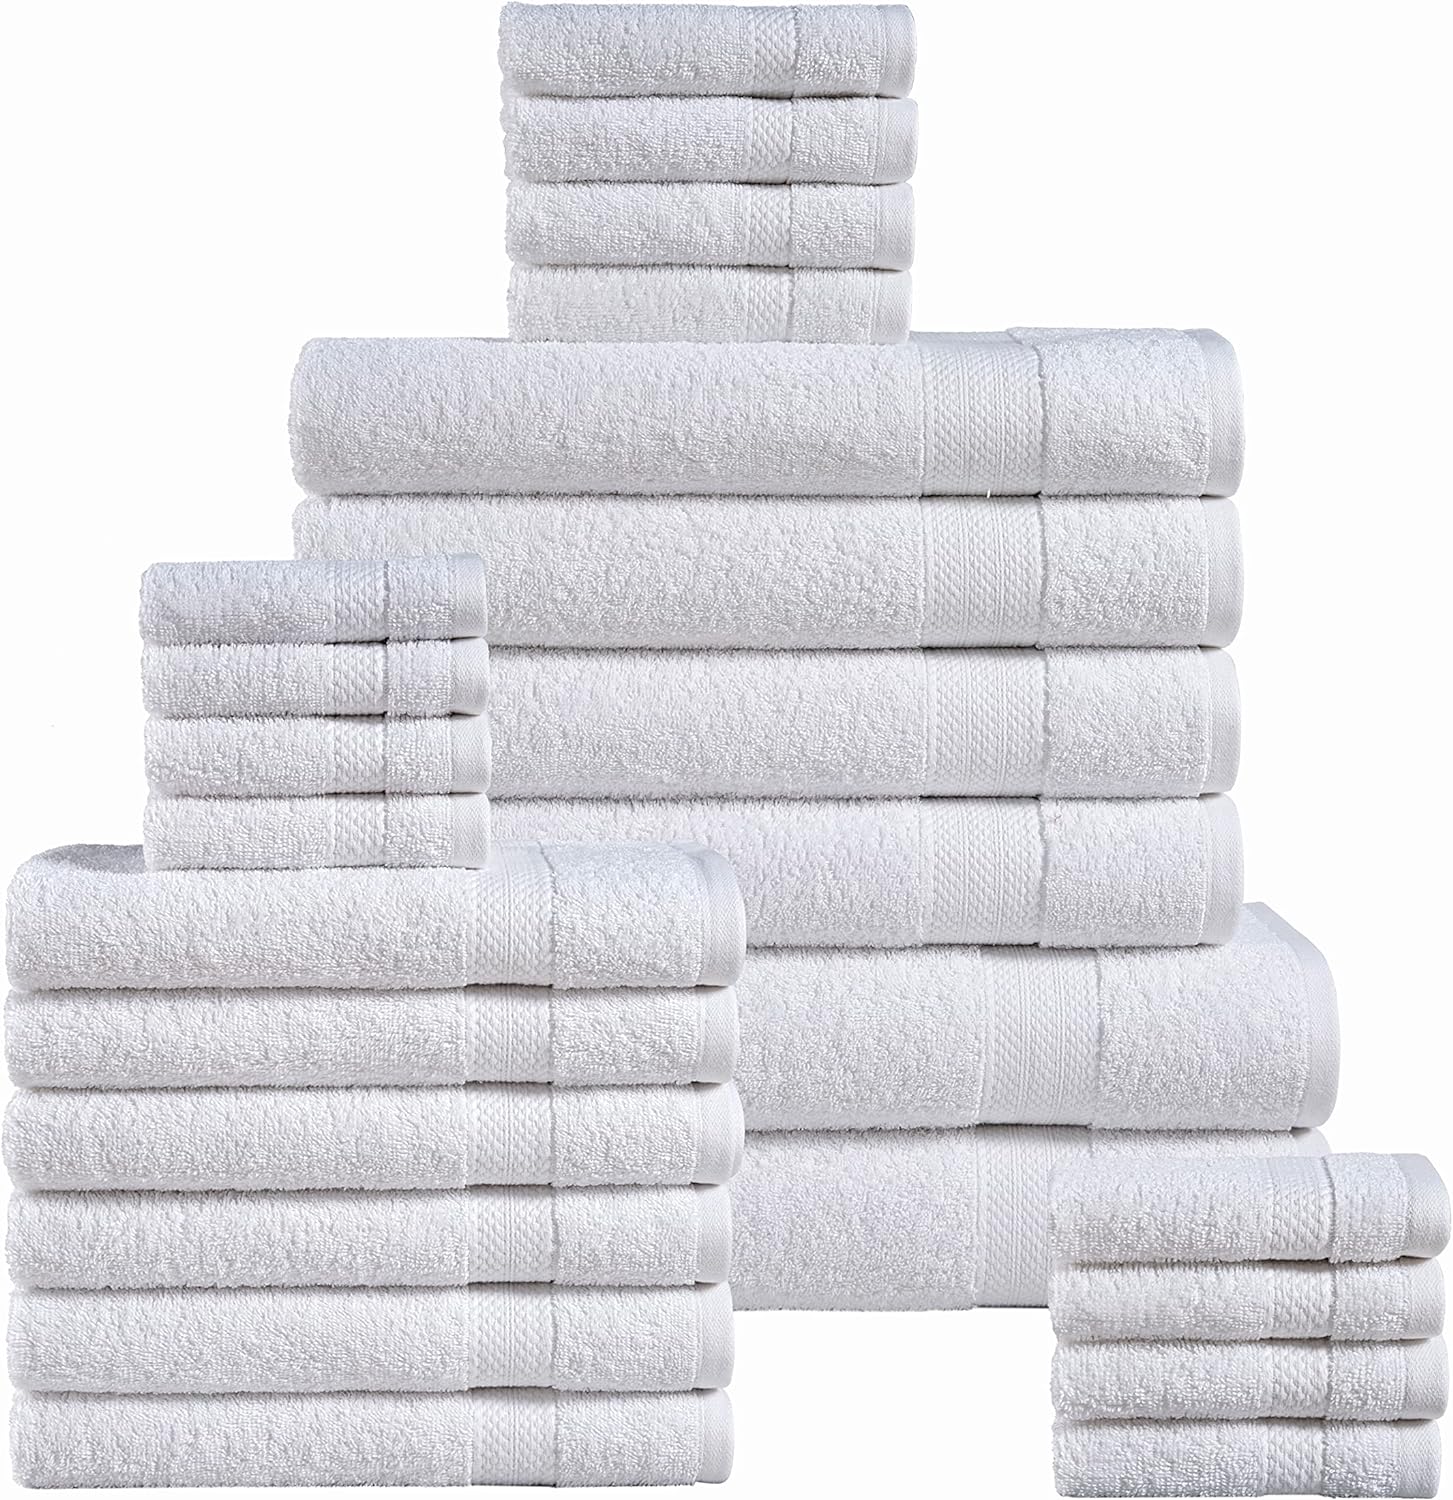 Juego de 24 toallas de baño blancas para baño, 2 toallas de baño